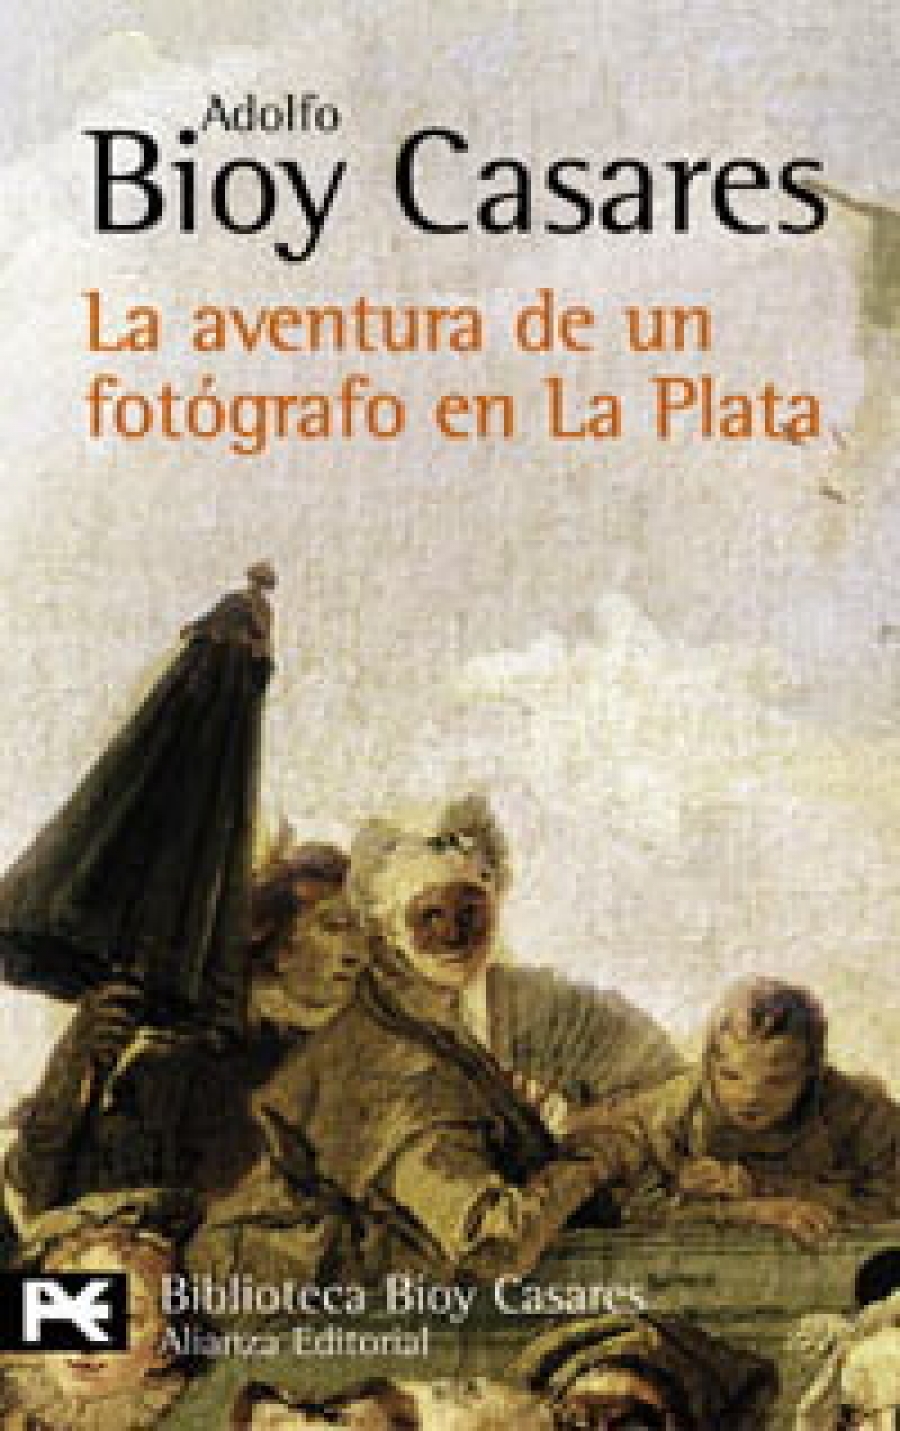 Bioy Casares, Adolfo Aventura de un fotgrafo en La Plata 